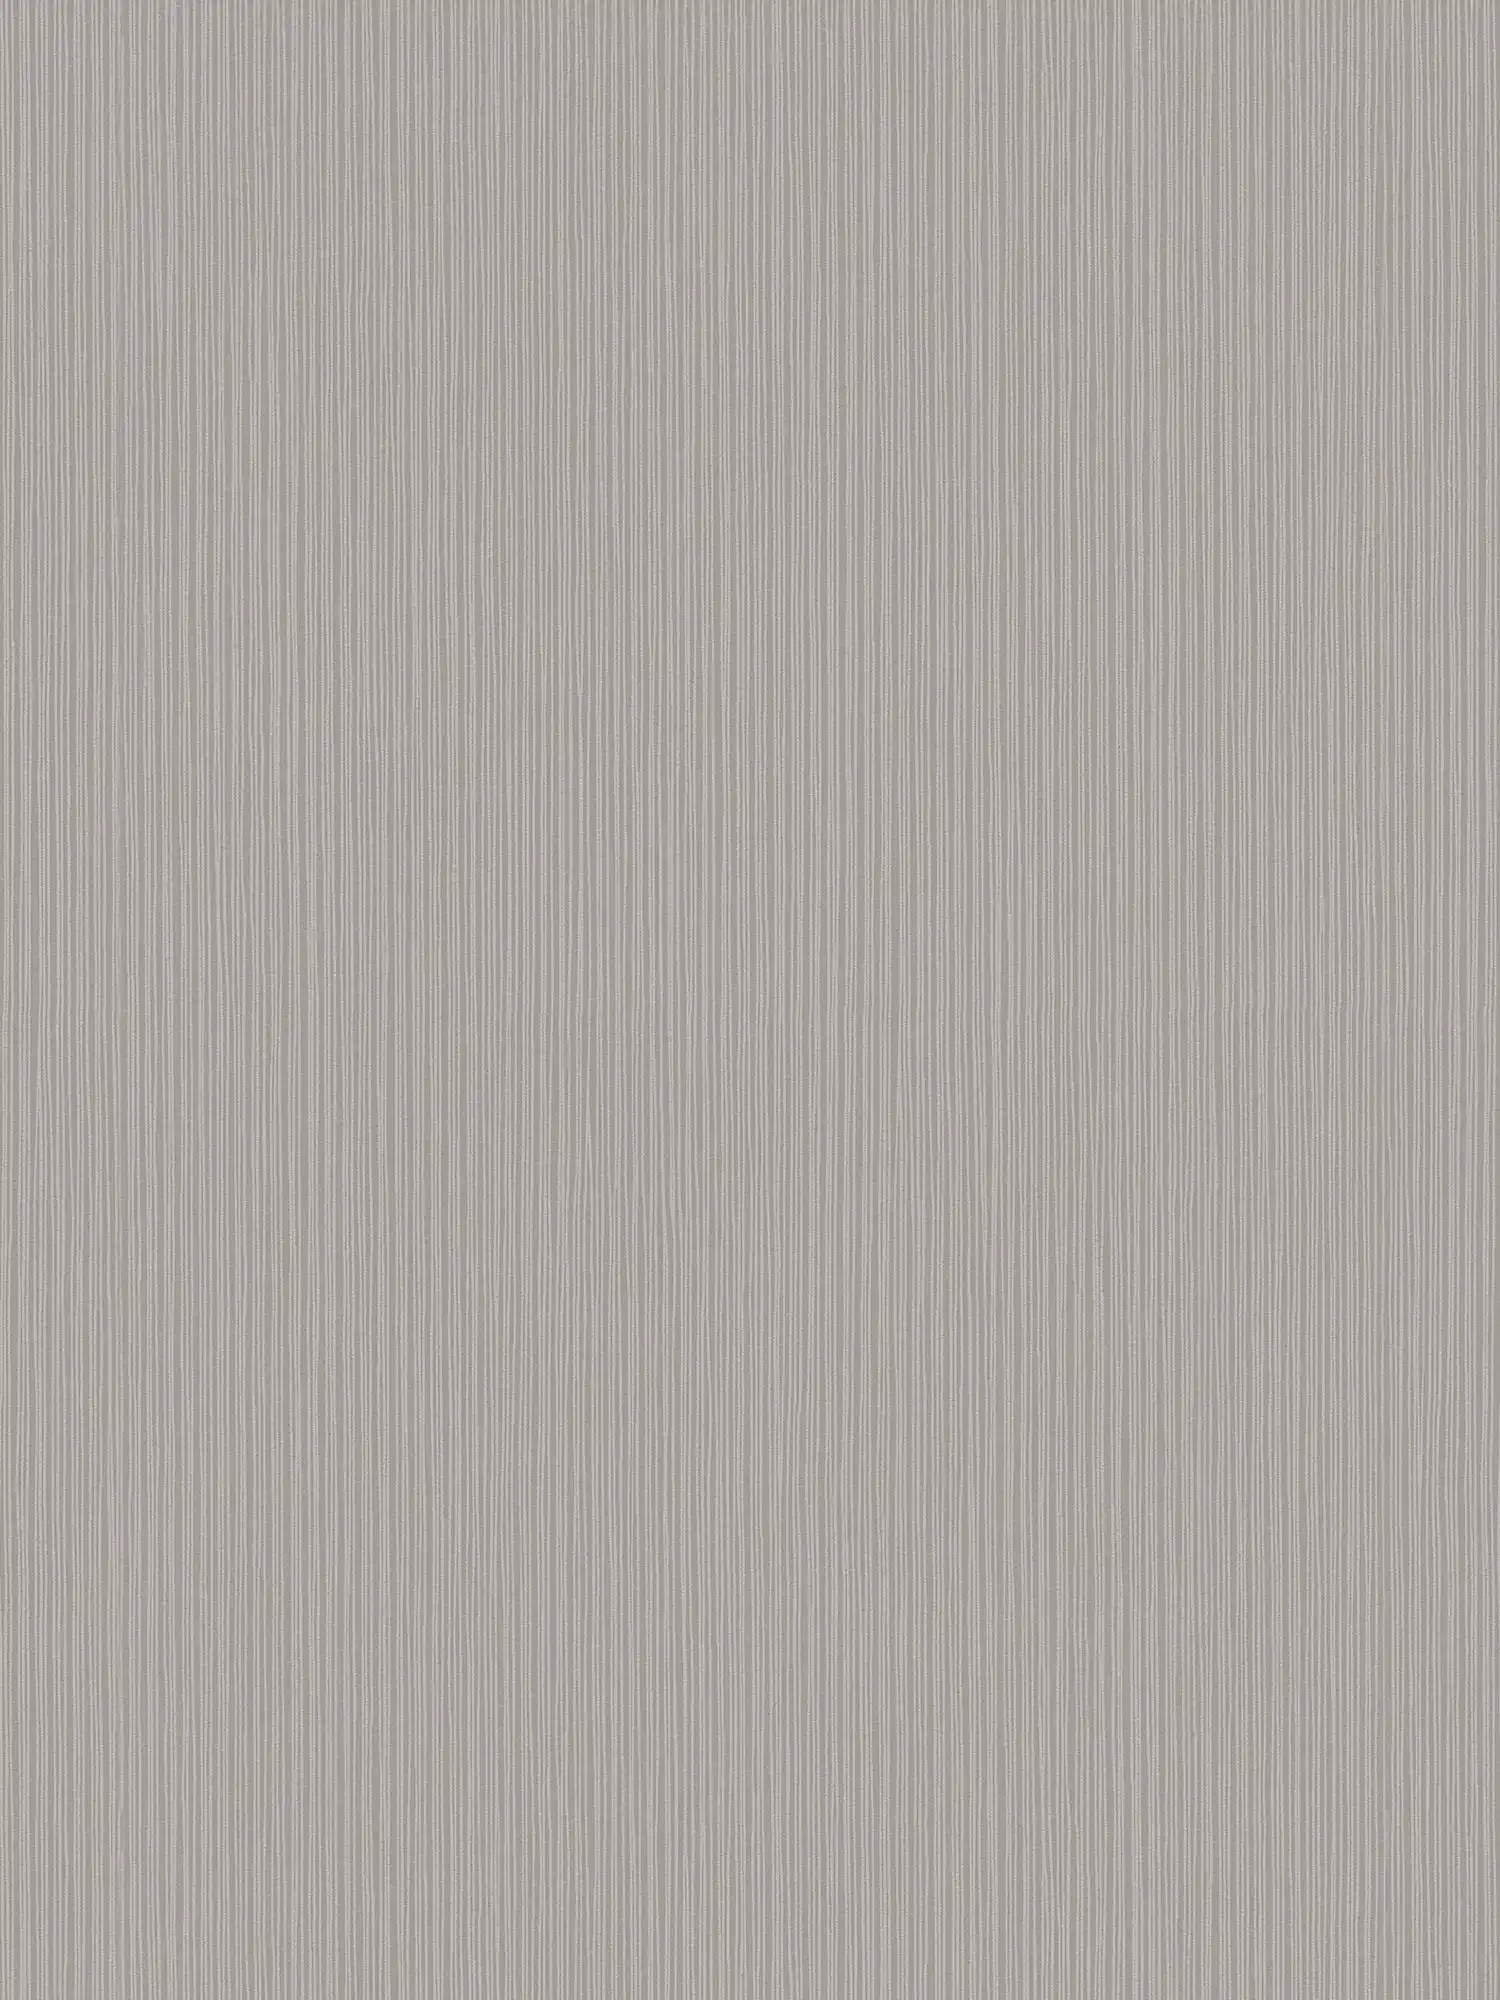 Vliestapete Grau unifarben, schmales Linien-Muster
